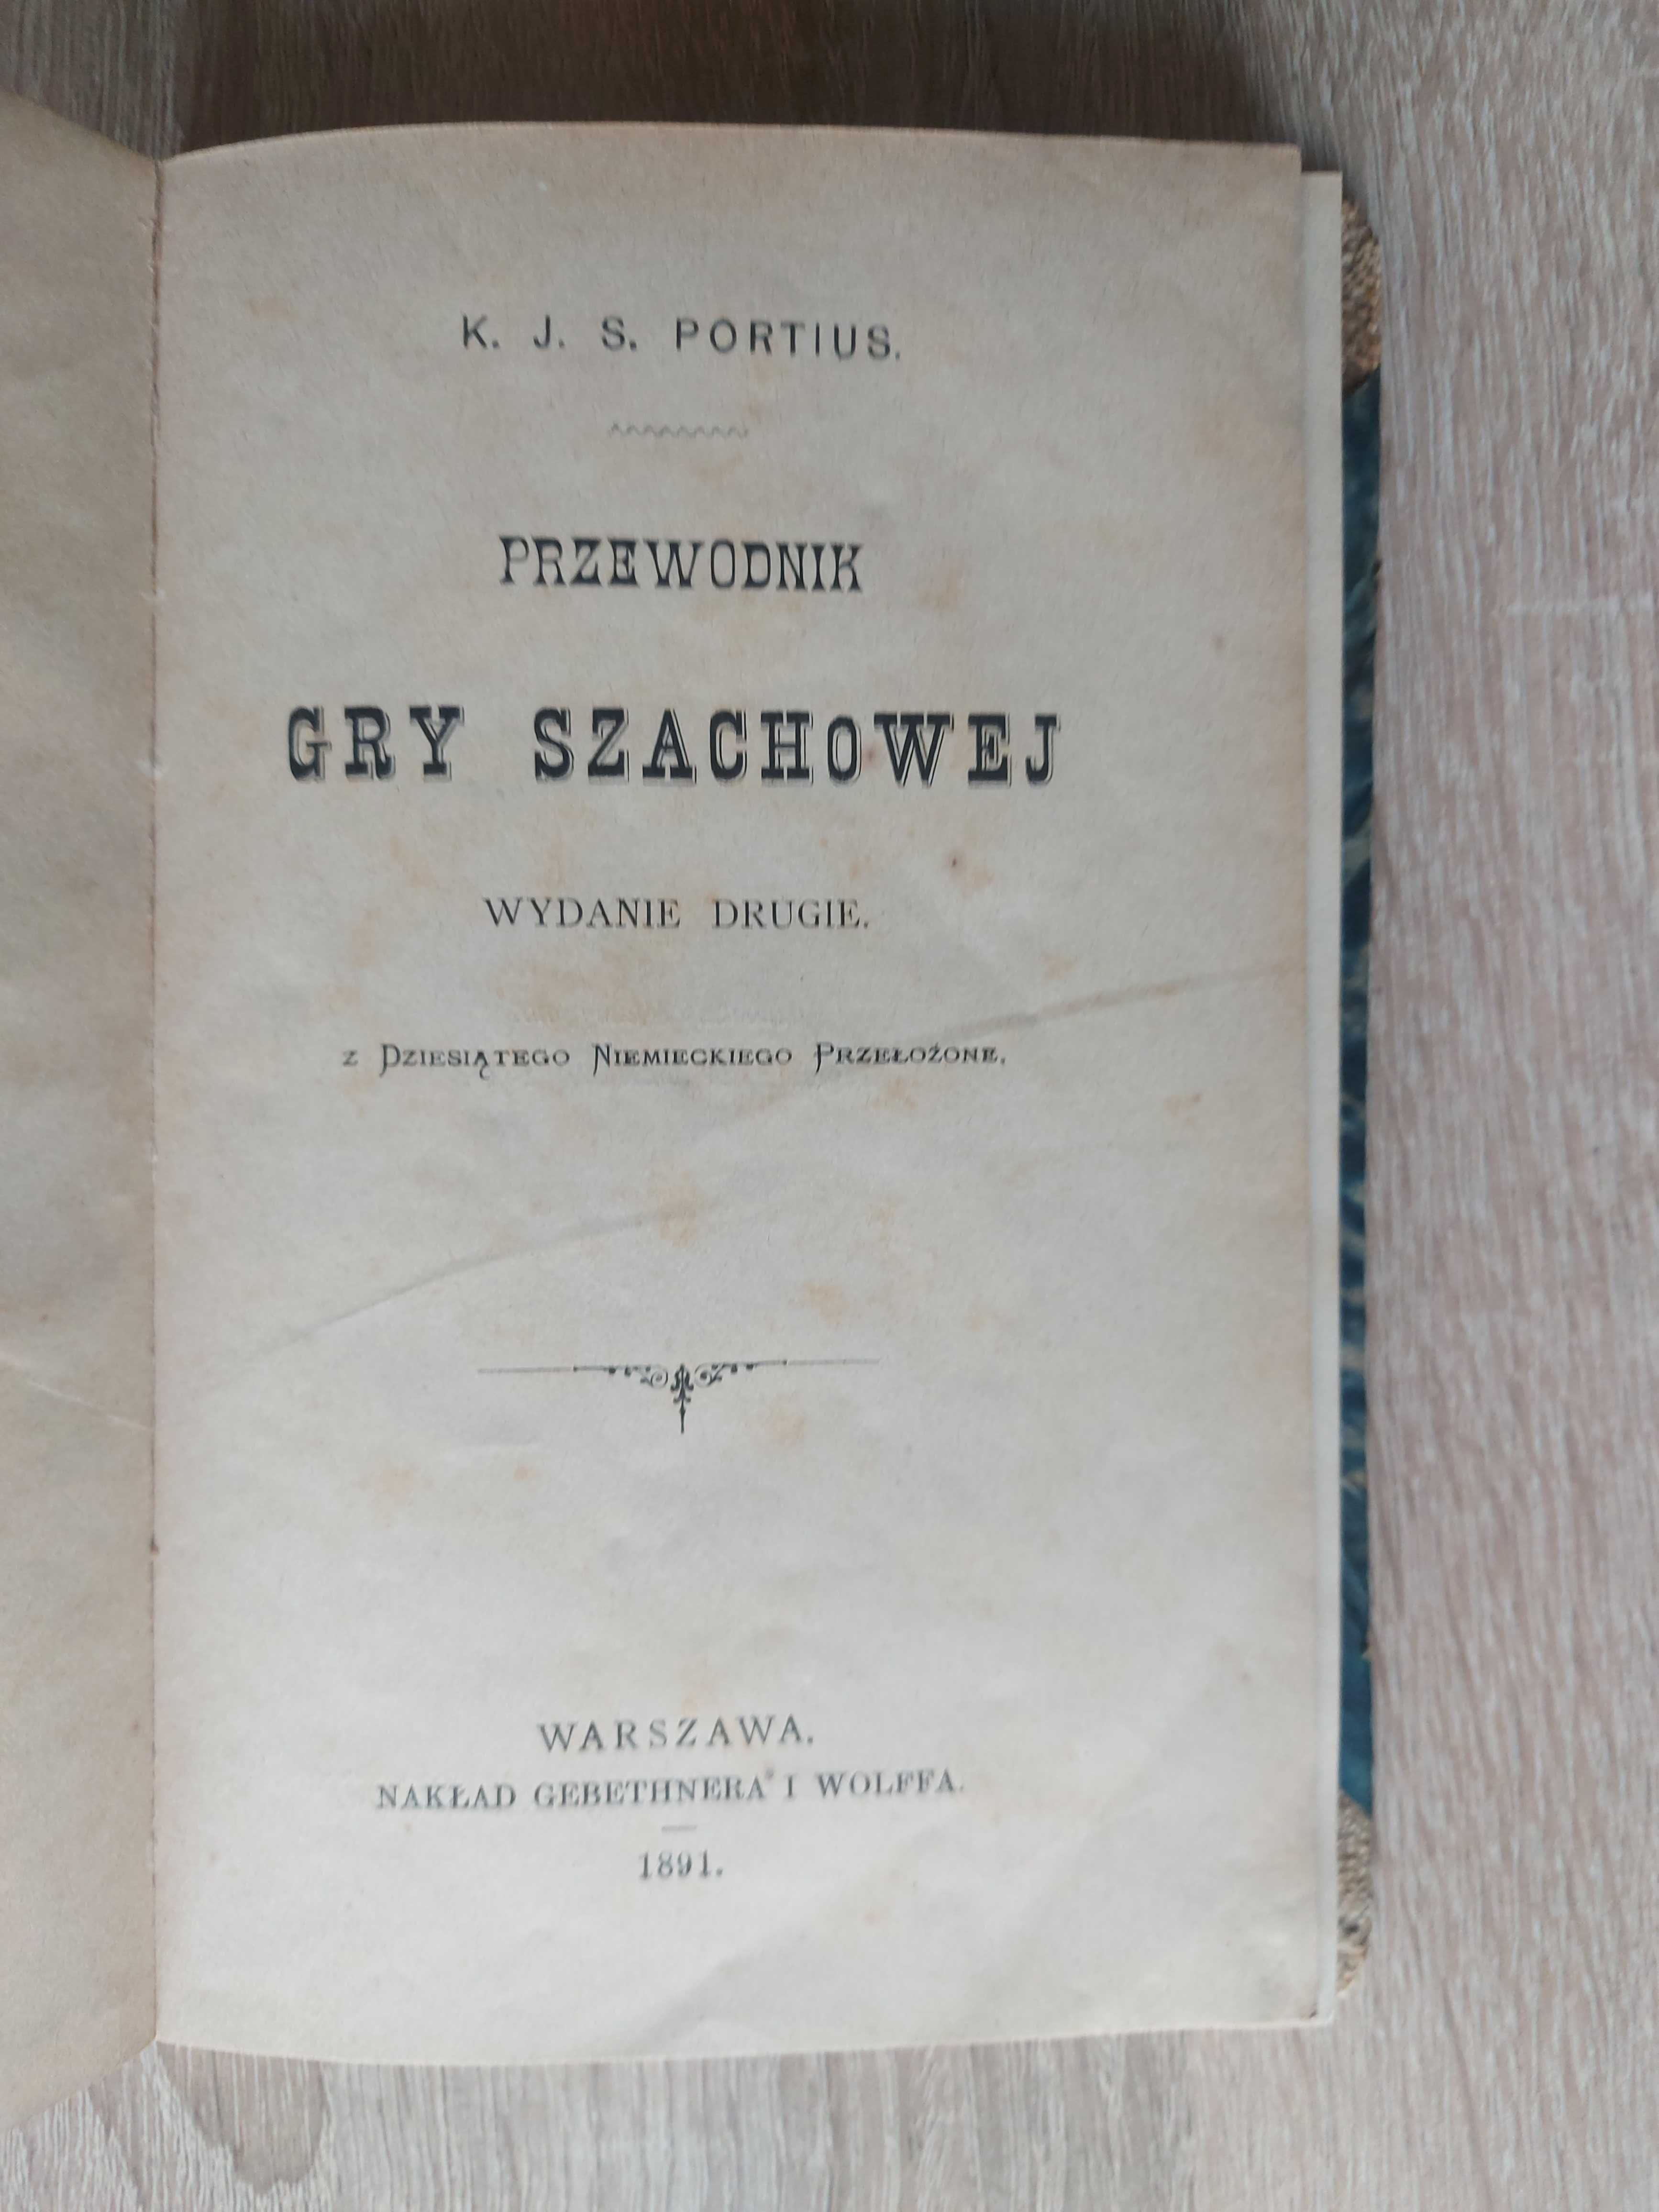 K.J.S. Portius : PRZEWODNIK GRY SZACHOWEJ (wydanie drugie z 1891 roku)